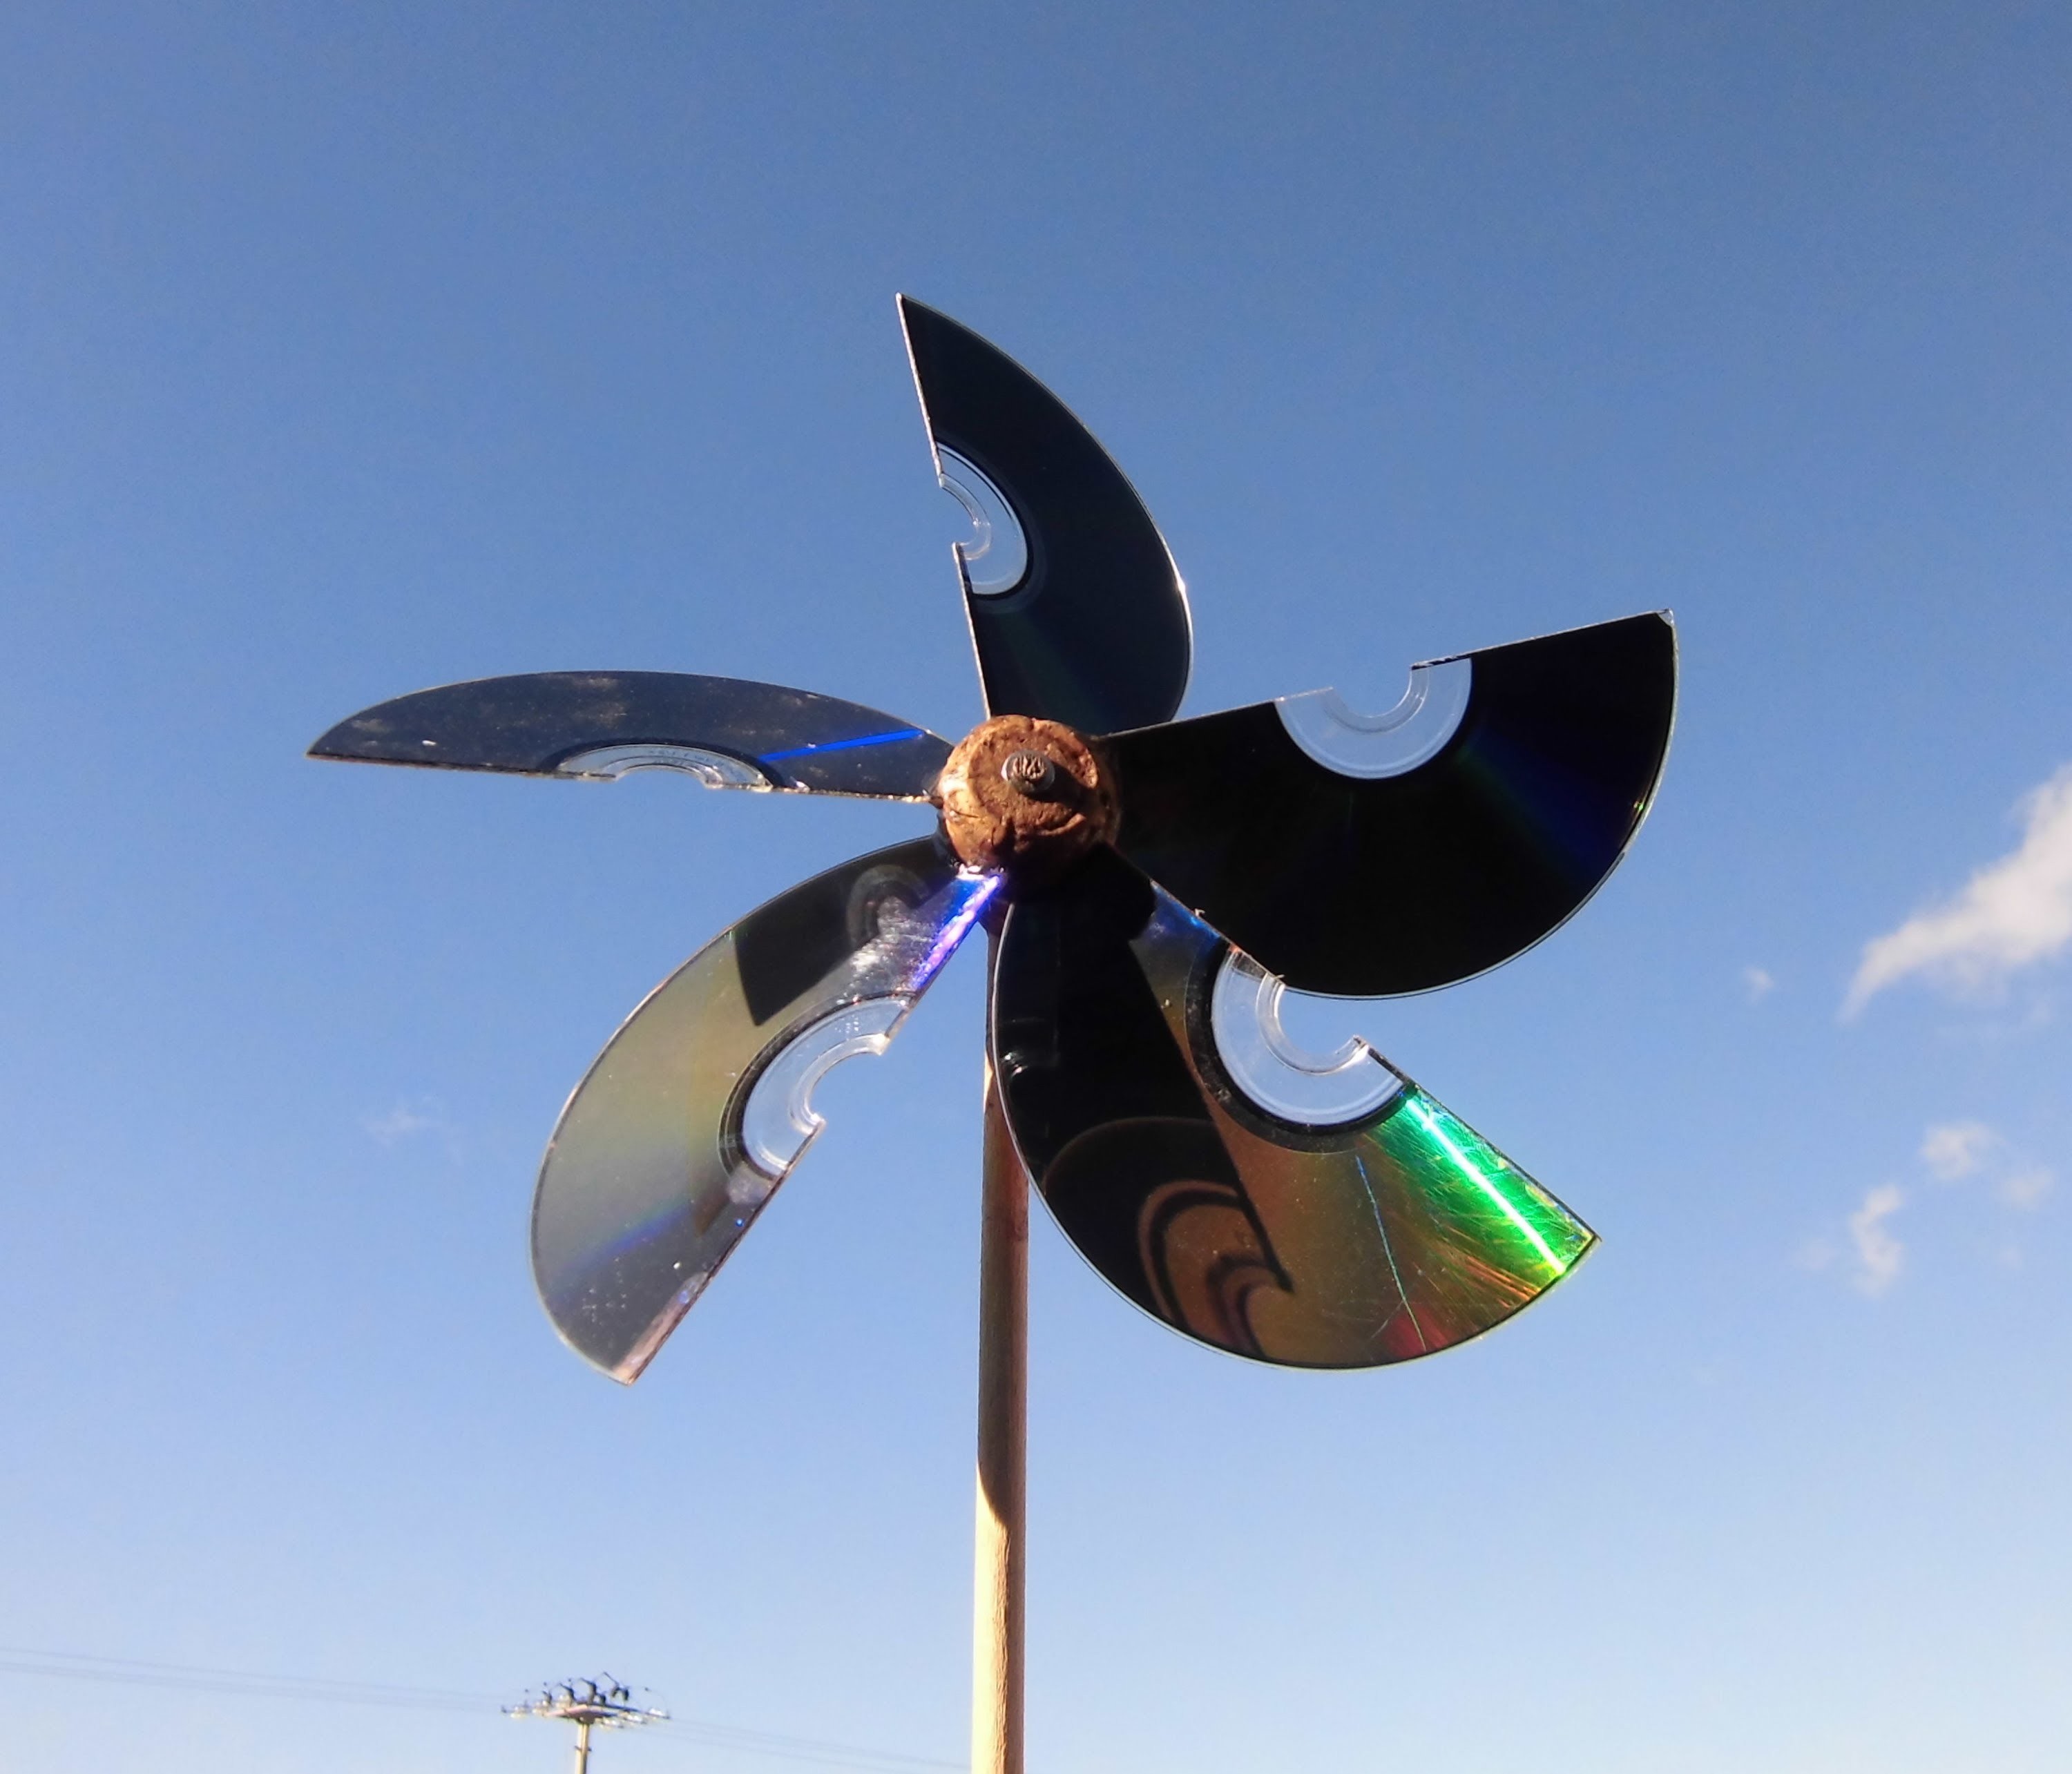 Molinillo de viento, reciclando cds, corcho.  Video de JM-QJ